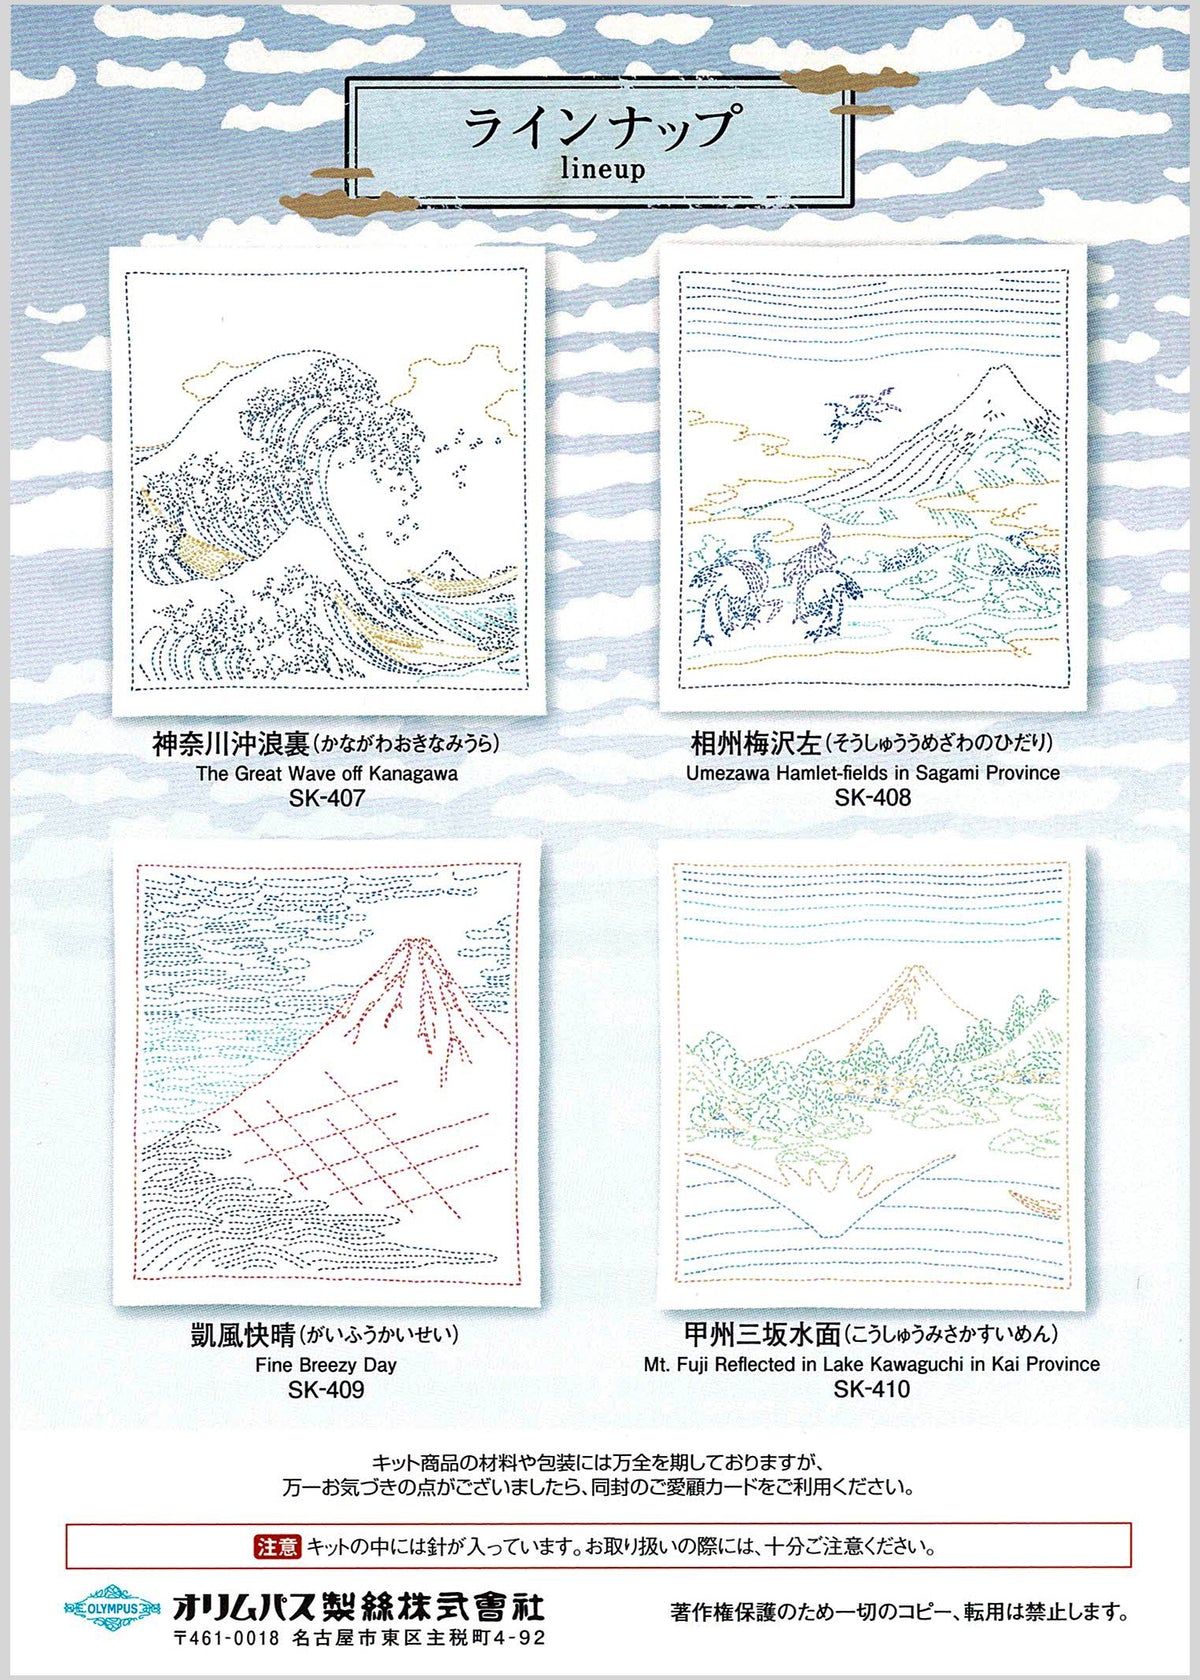 Views of Mt. Fuji Sashiko Embroidery Kit - Great Wave